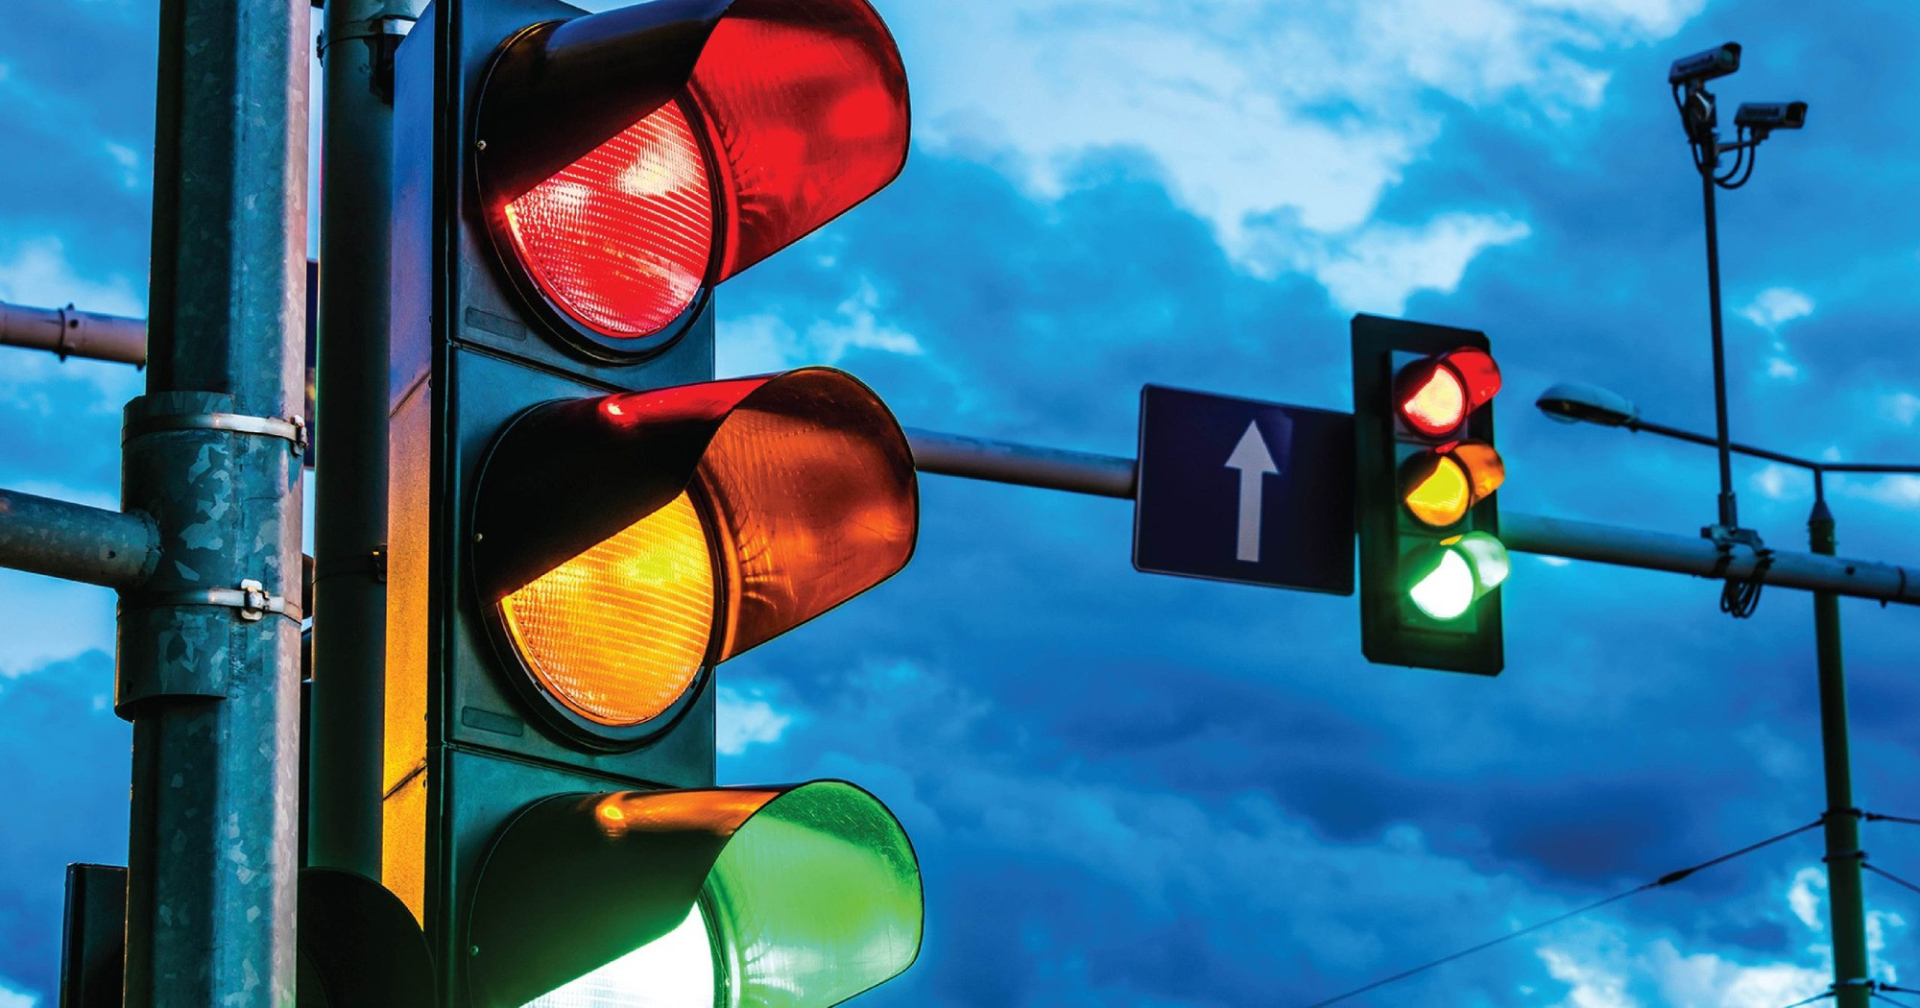 Có 7 màu cơ bản nhưng tại sao lấy xanh, đỏ, vàng làm đèn tín hiệu giao thông mà không phải màu khác?